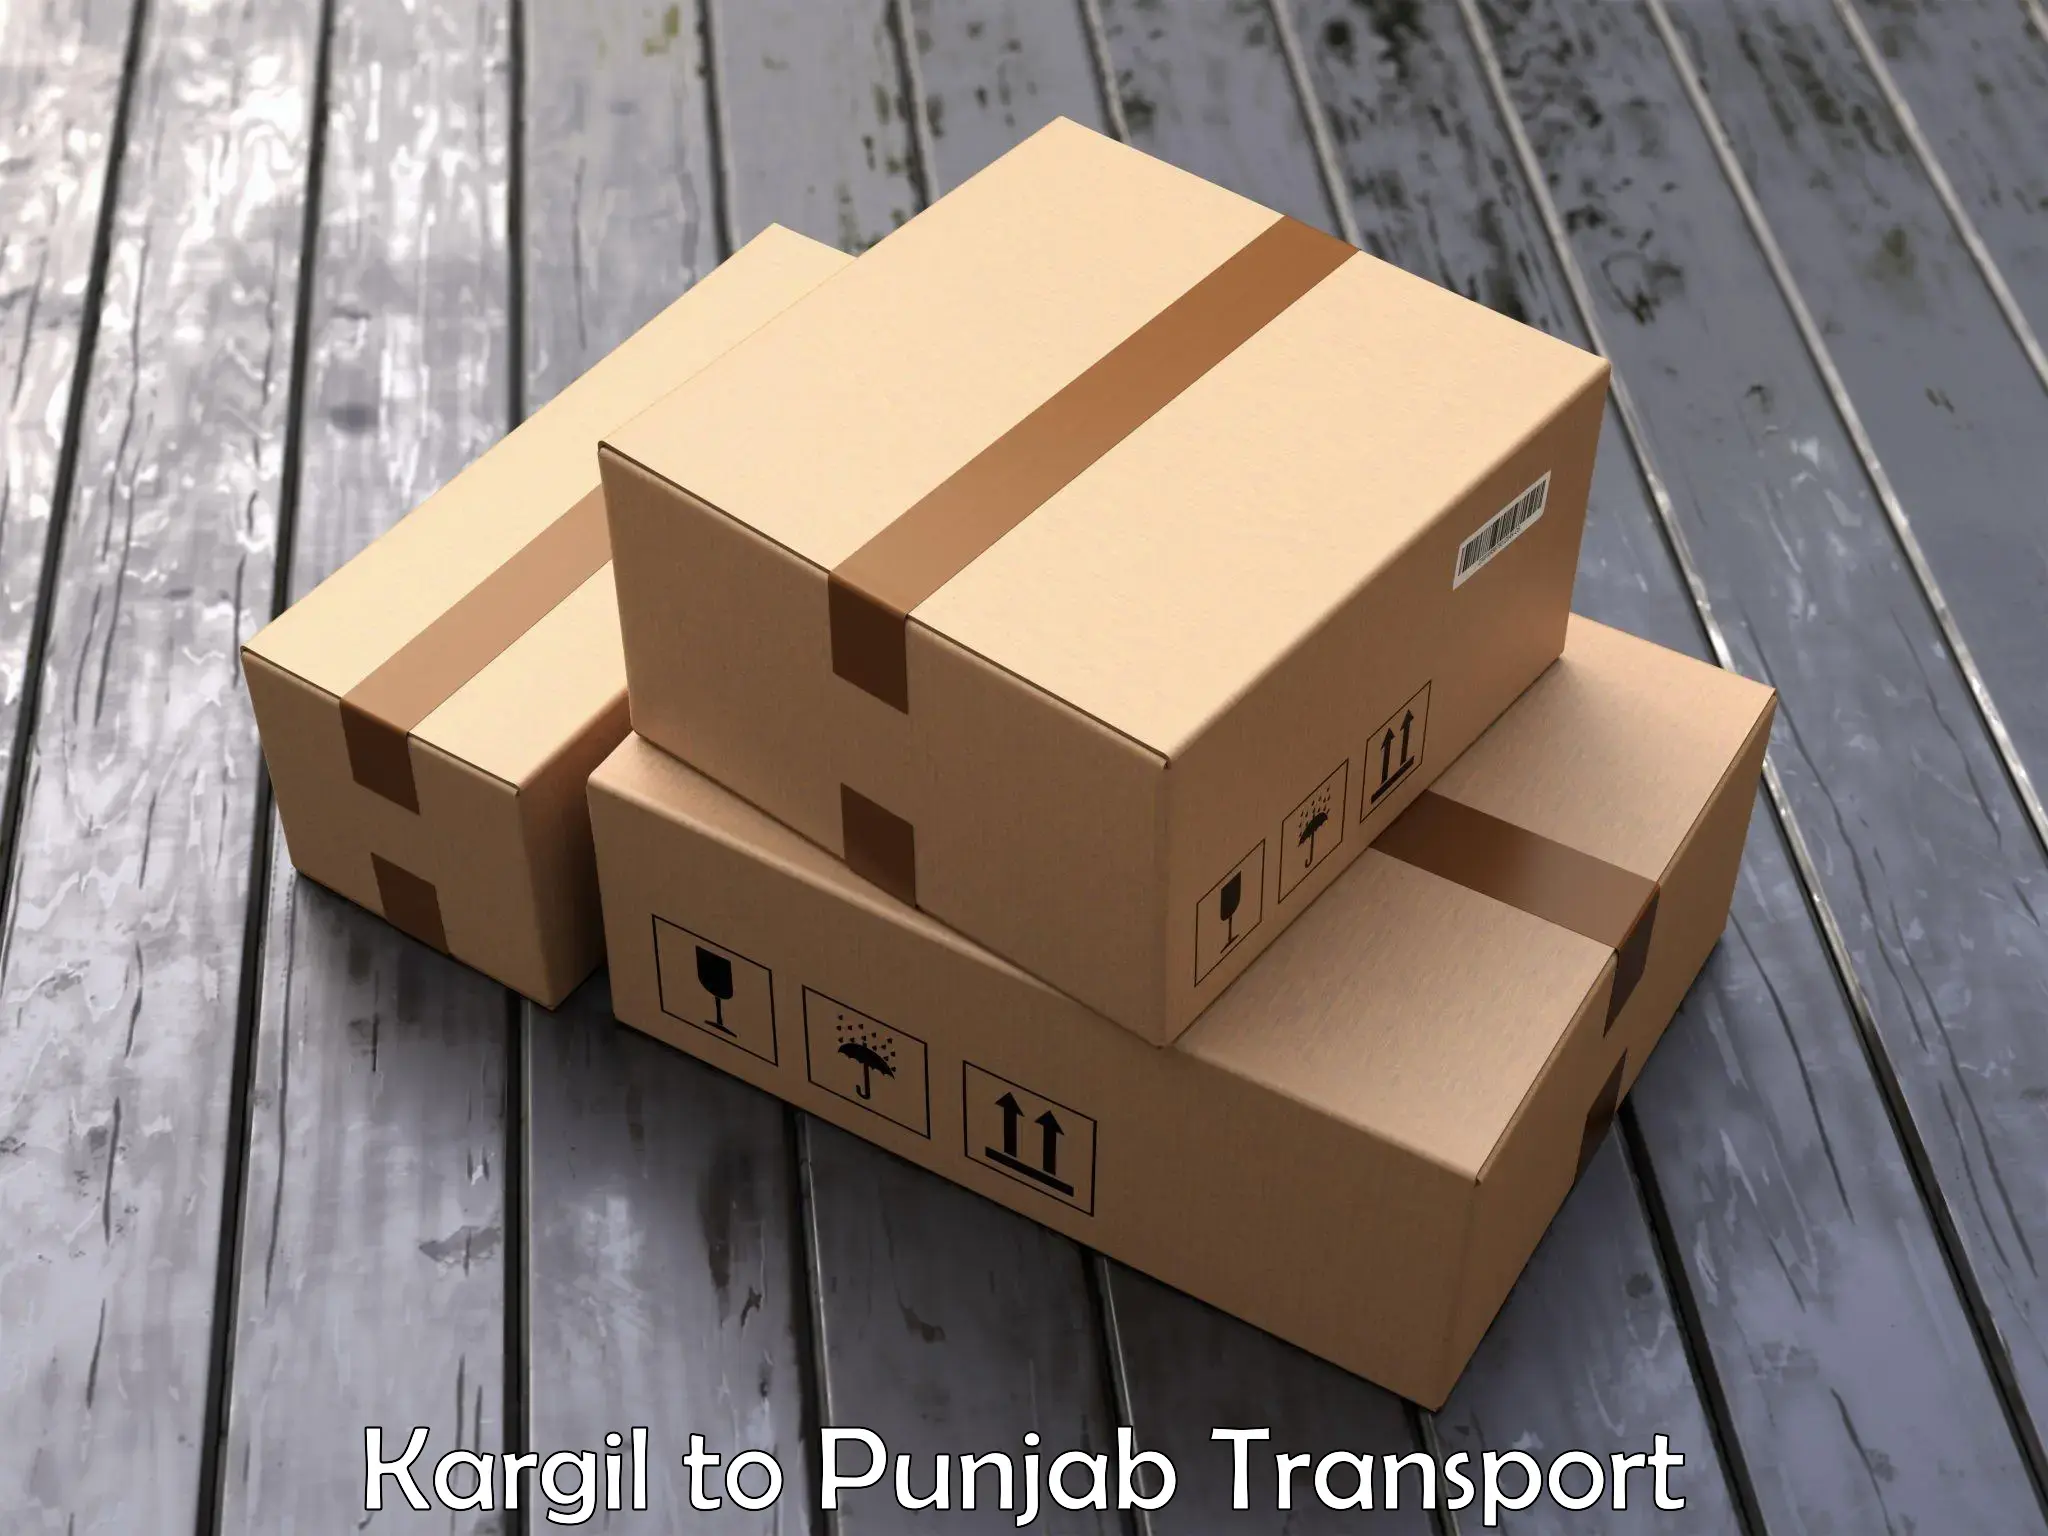 Two wheeler transport services Kargil to Punjab